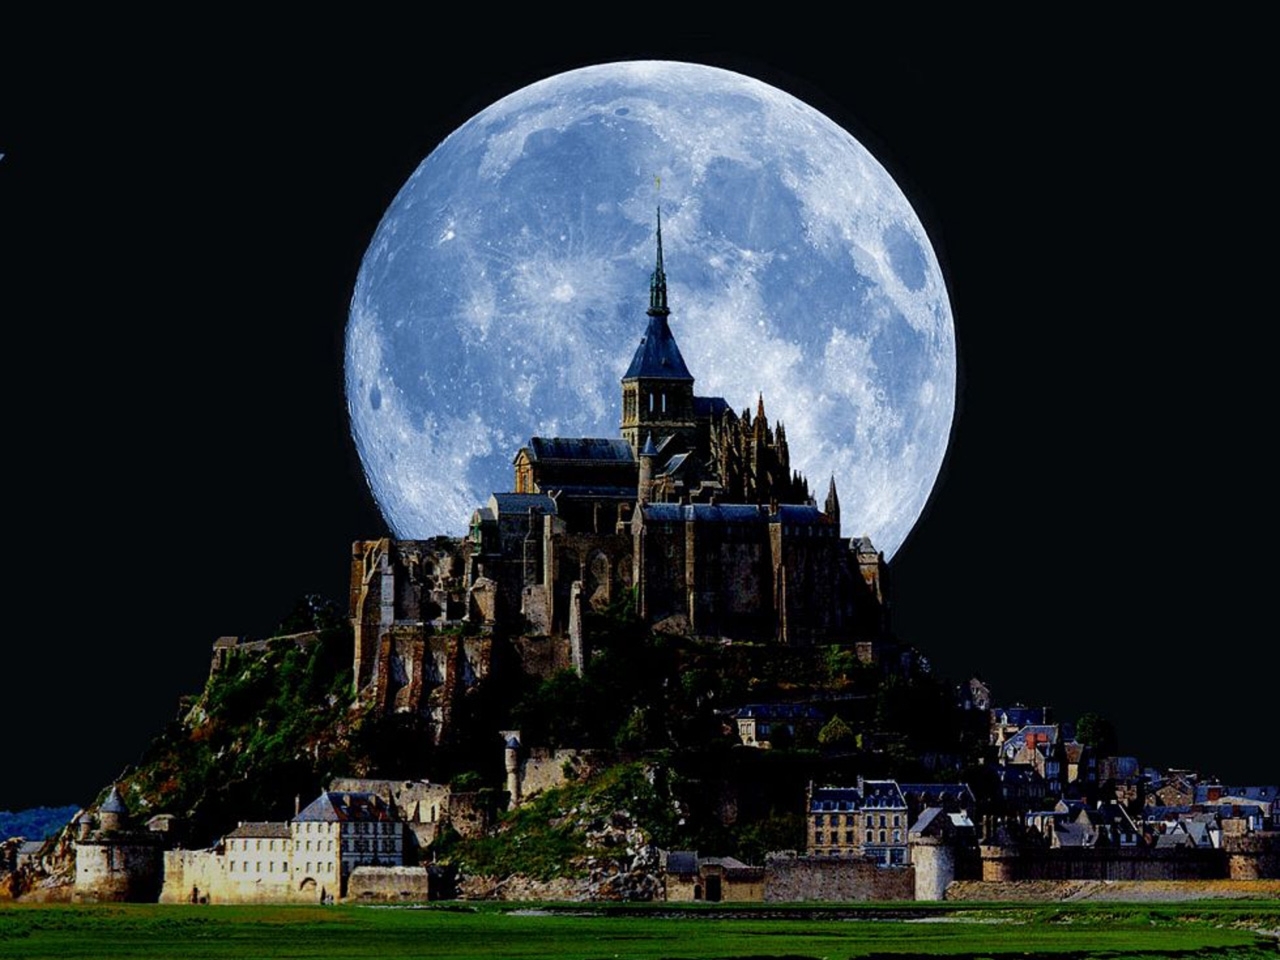 castles, landscape, nature, moon images